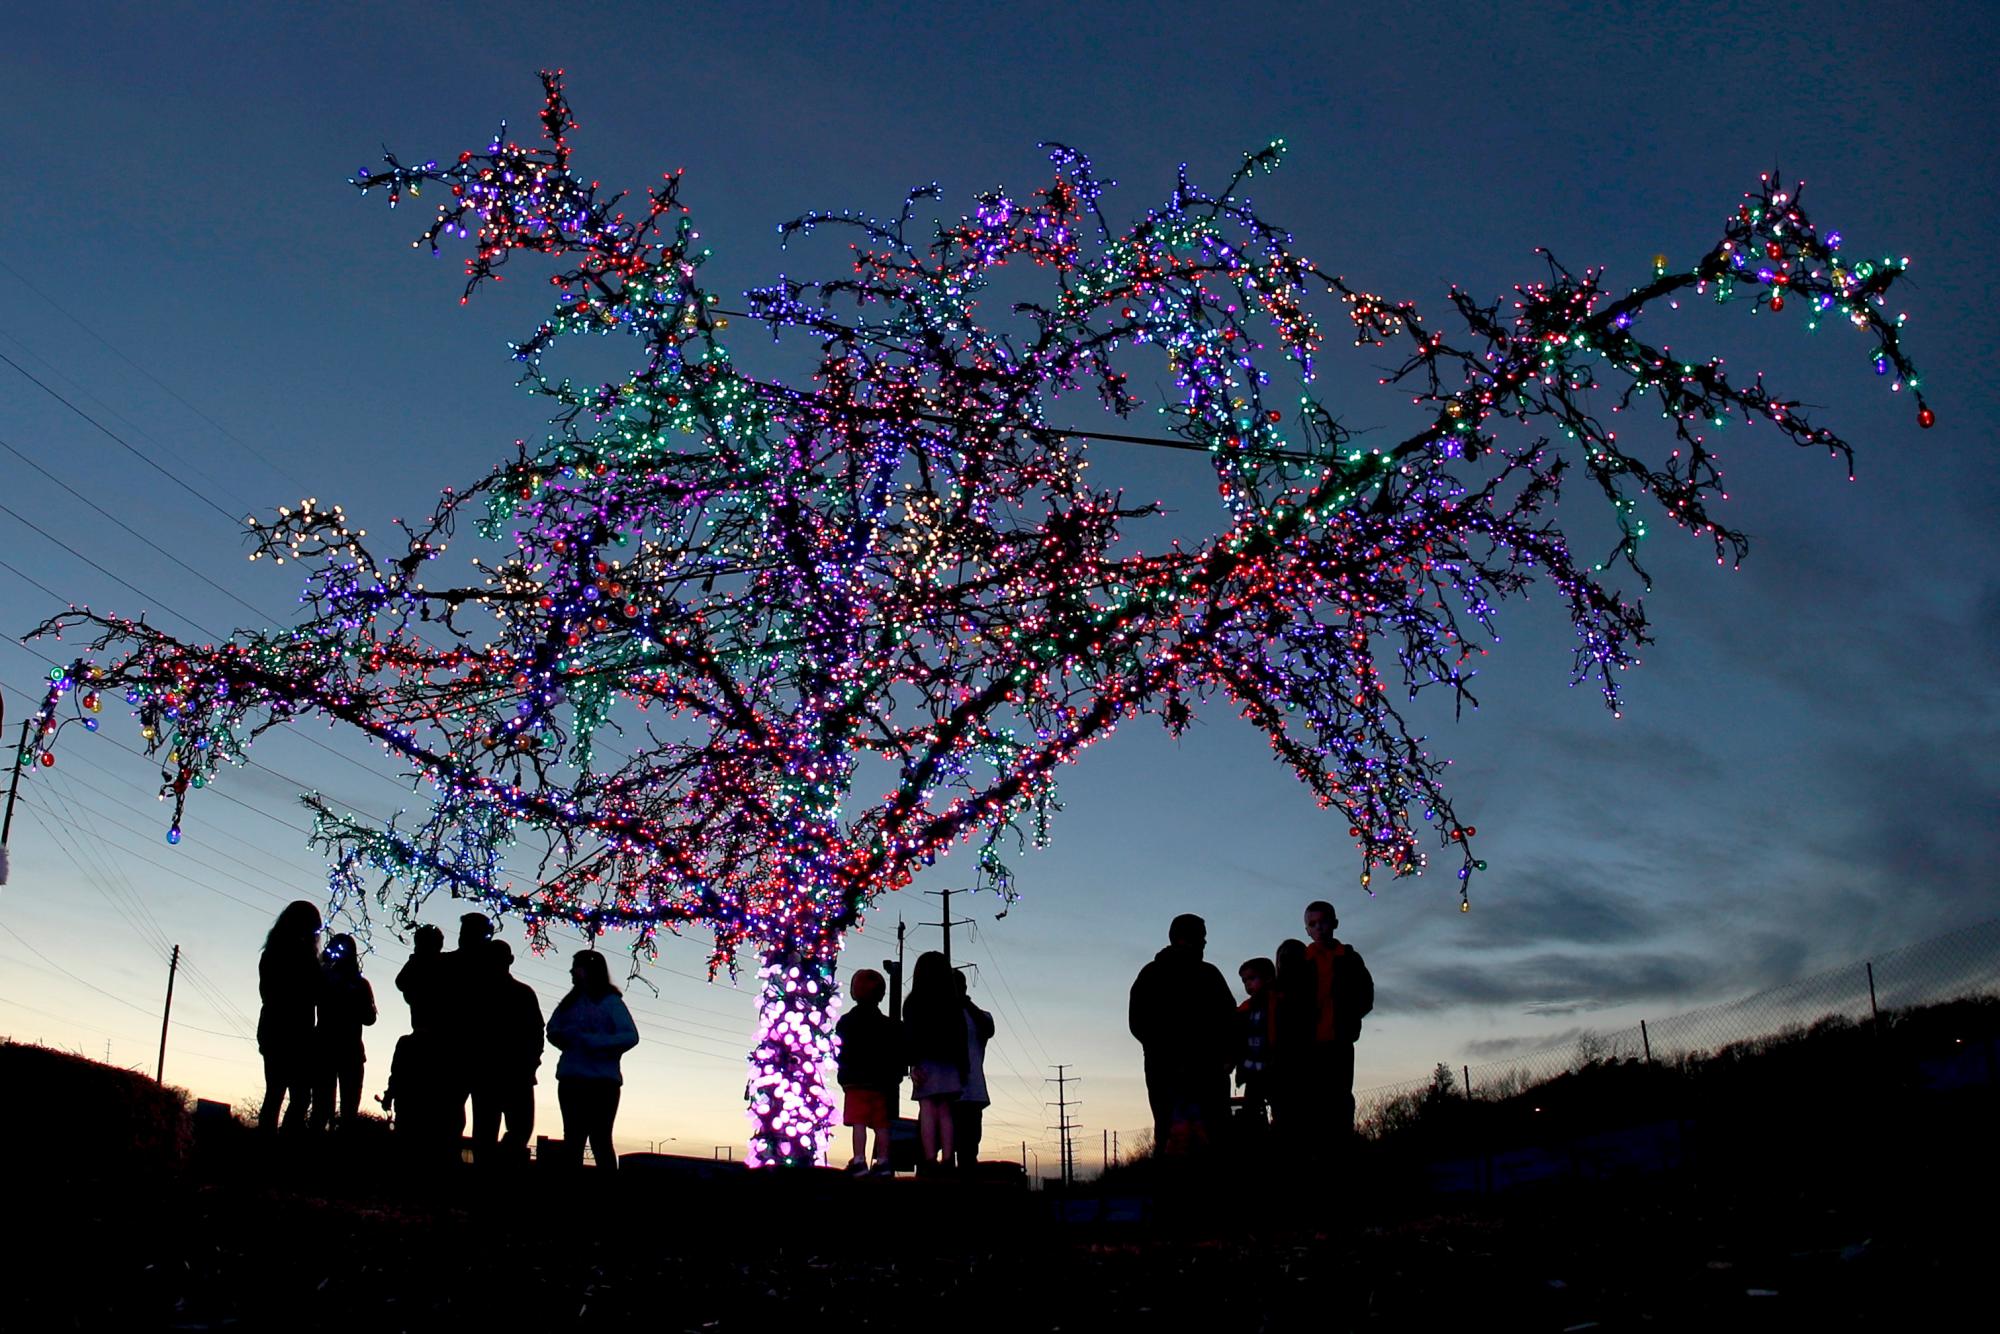 La gente se reúne alrededor de un árbol de cangrejo decorado con más de 20,000 luces en Lee’s Summit, Mo. Conocido como el árbol mágico de Lee’s Summit, es un solo árbol en un lote baldío a lo largo de una autopista y atrae a cientos de visitantes cada temporada de vacaciones.